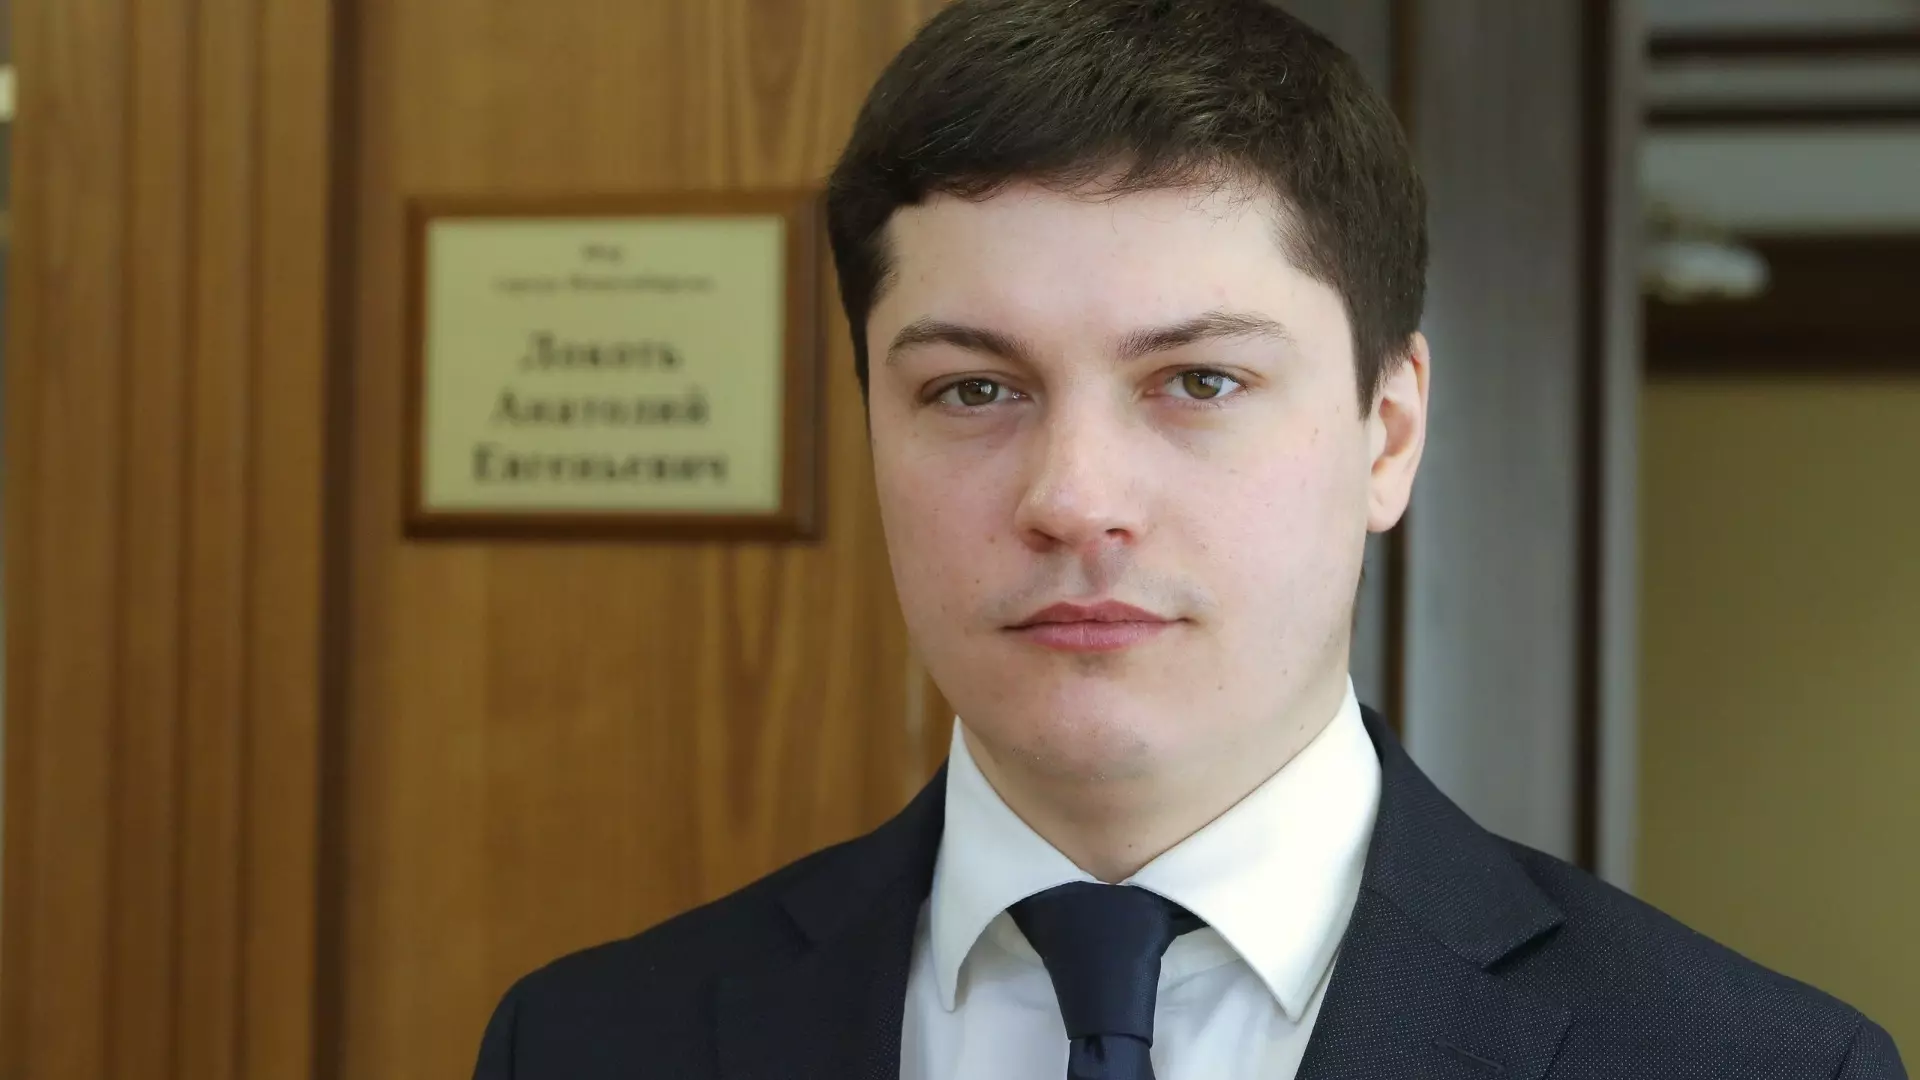 Артем Скатов работает заместителем мэра Новосибирска с 28 октября 2016 года